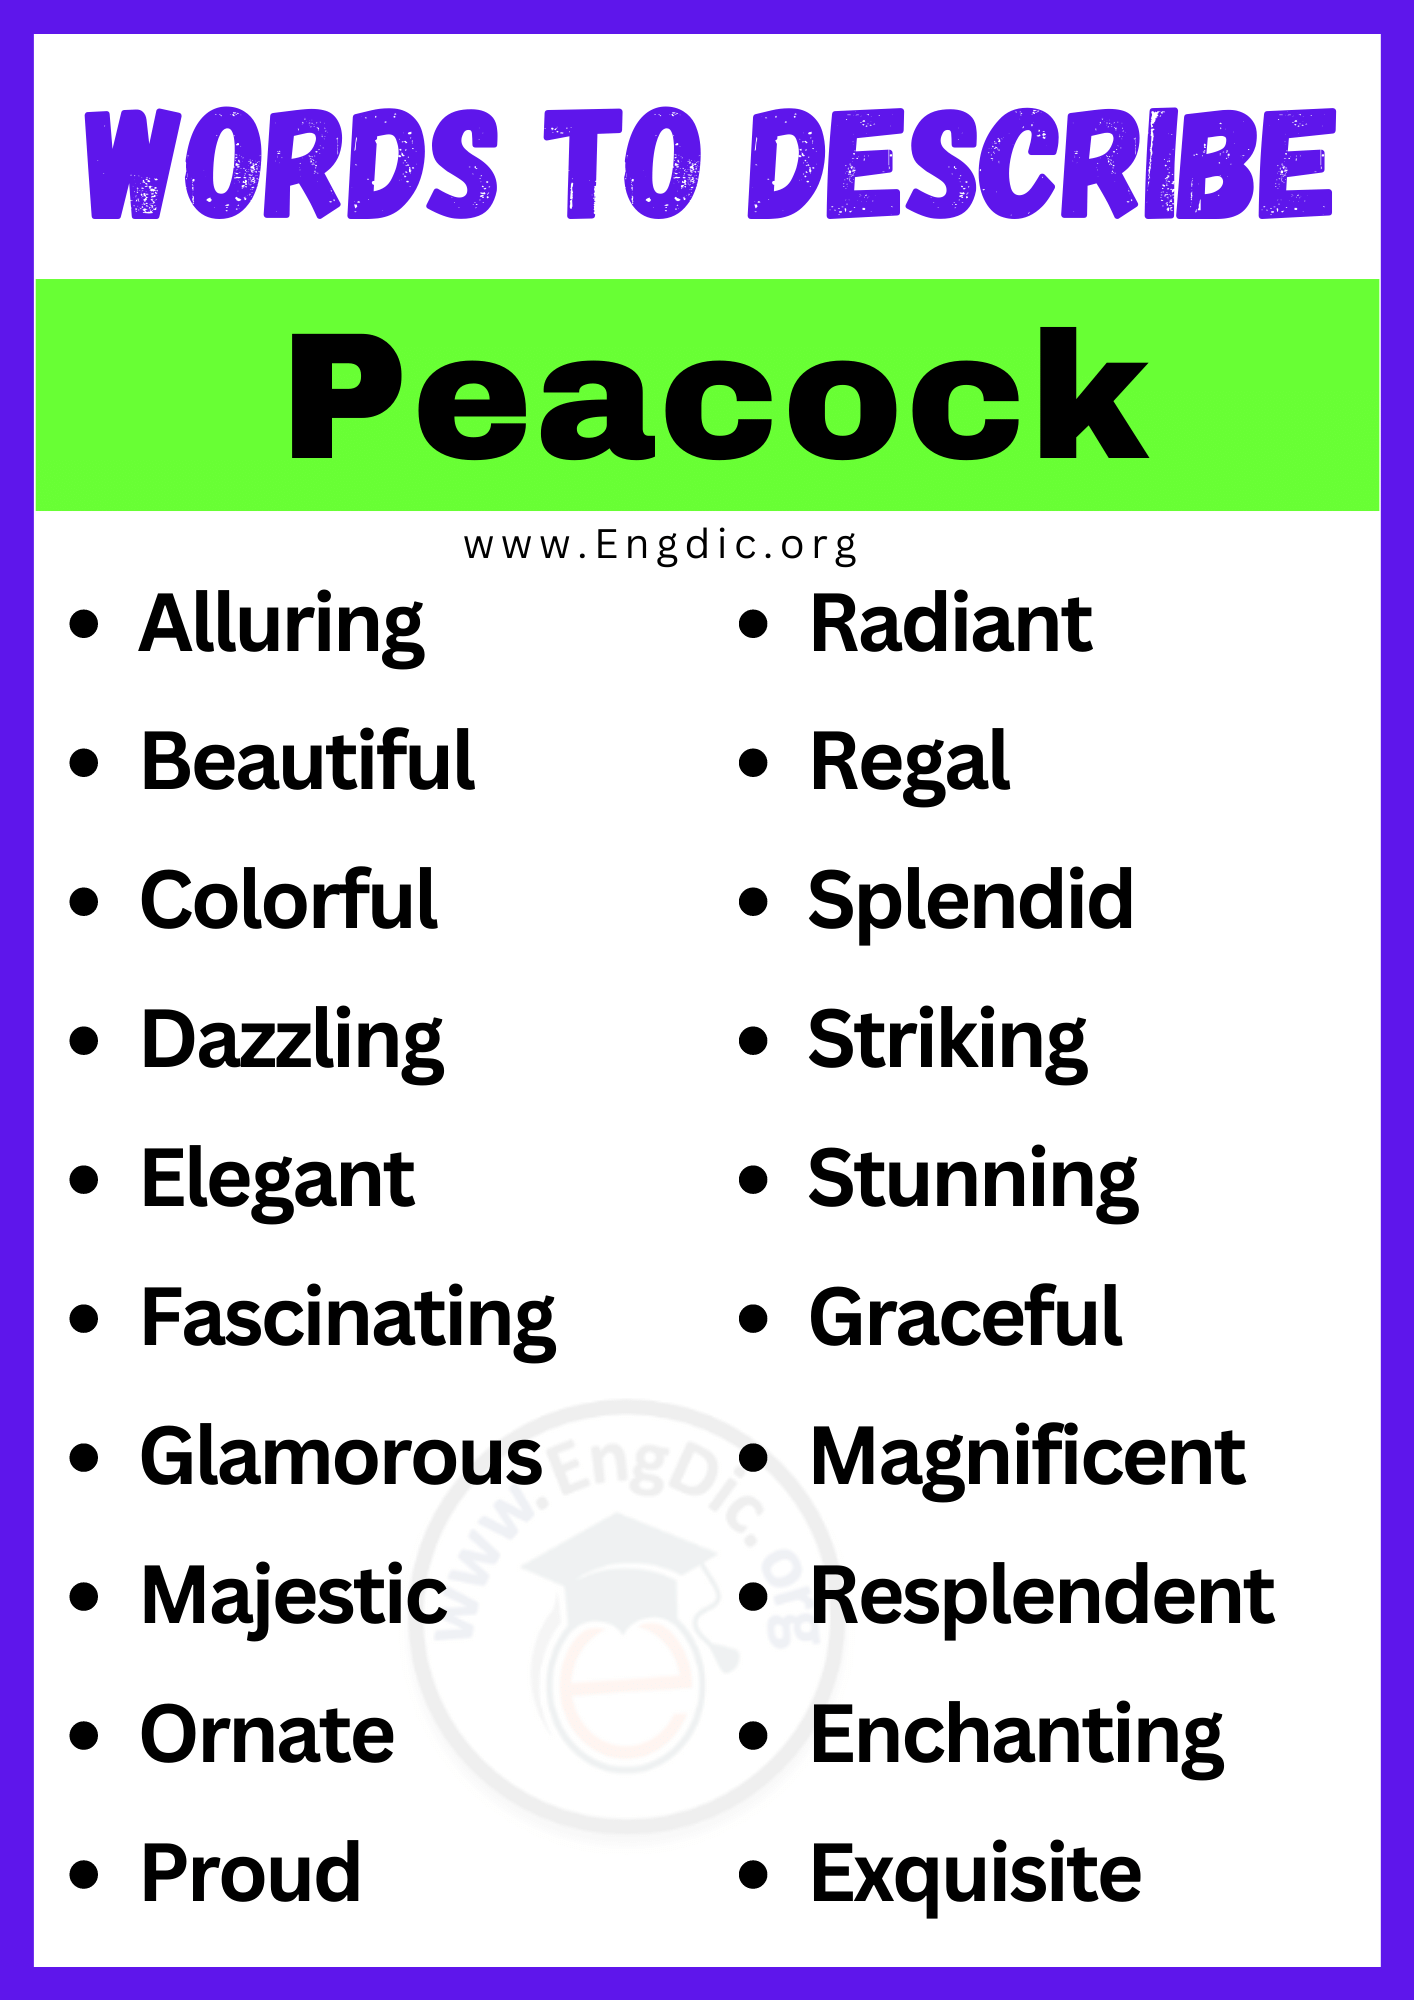 Words to Describe Peacock